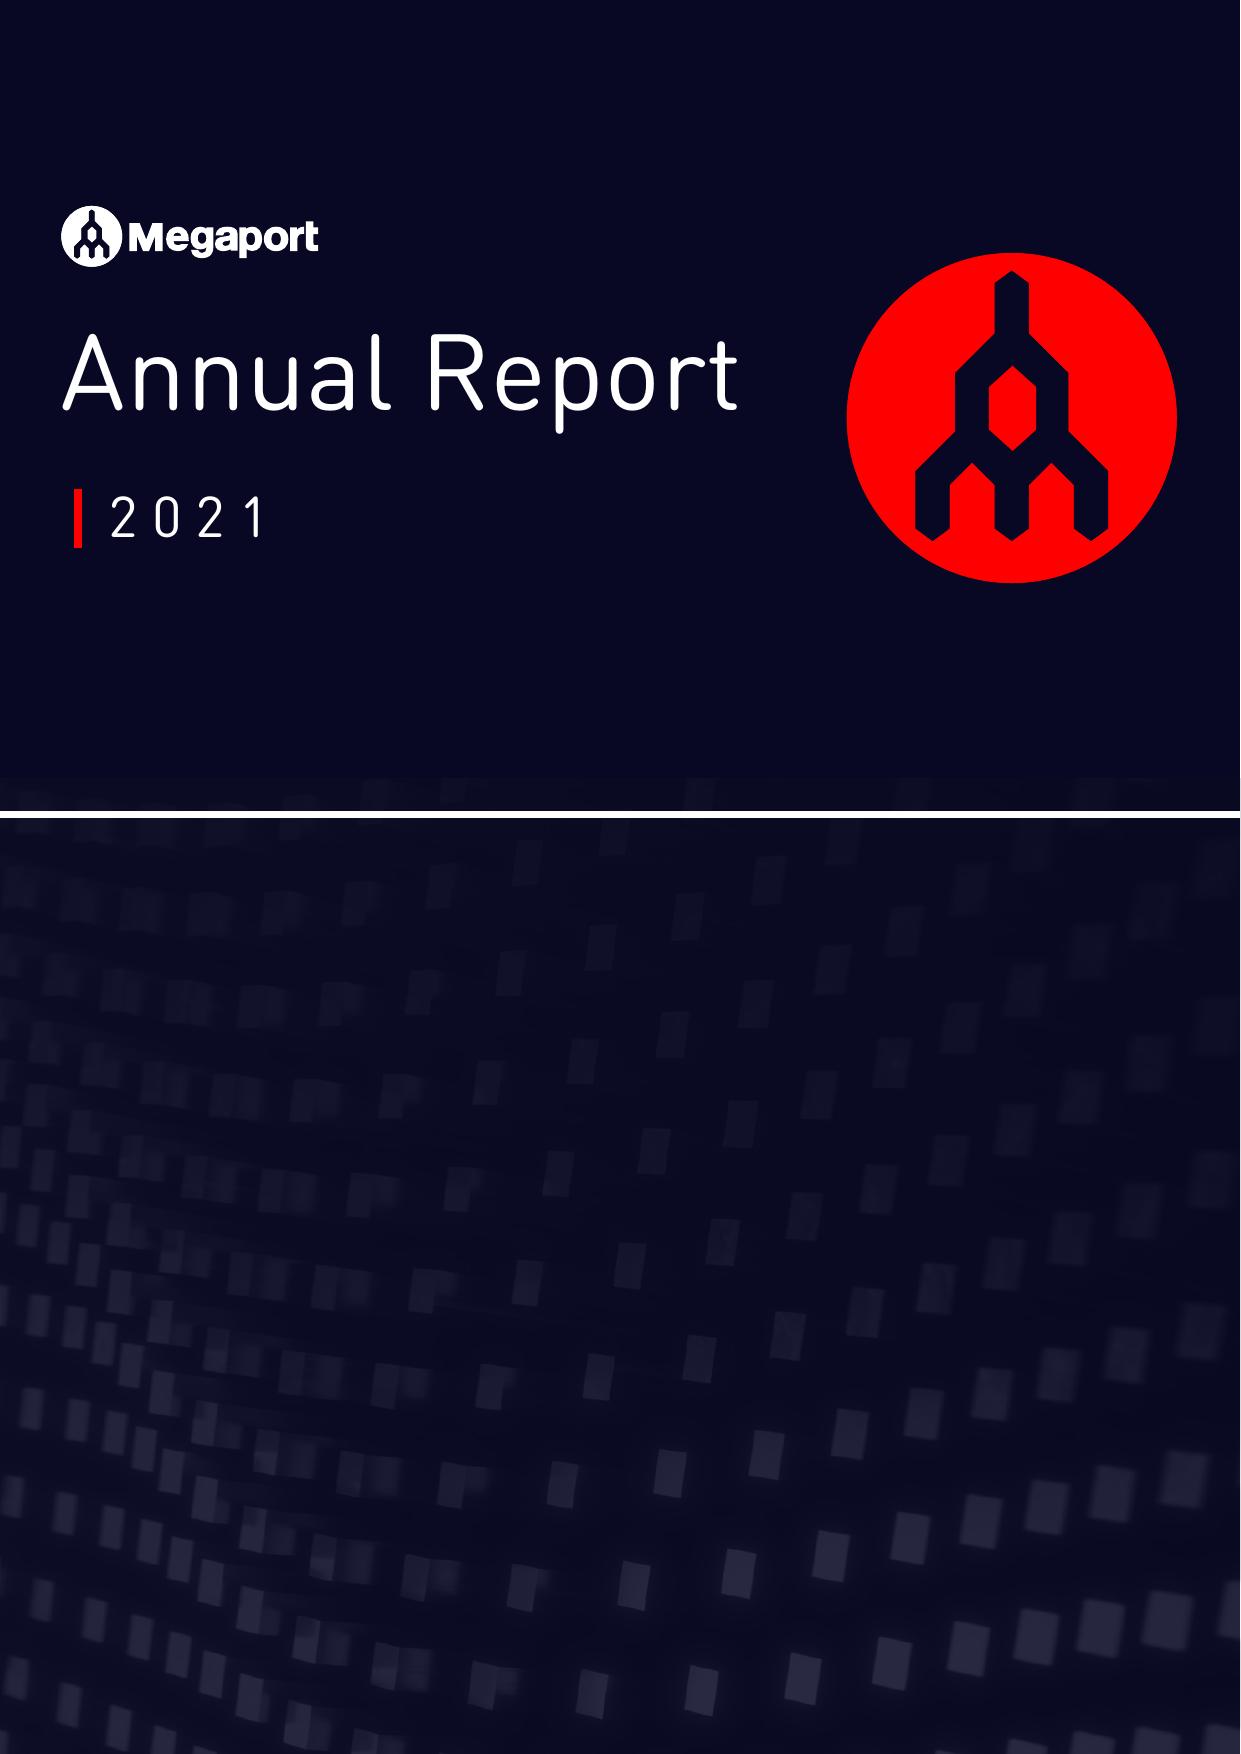 ZADARA Annual Report